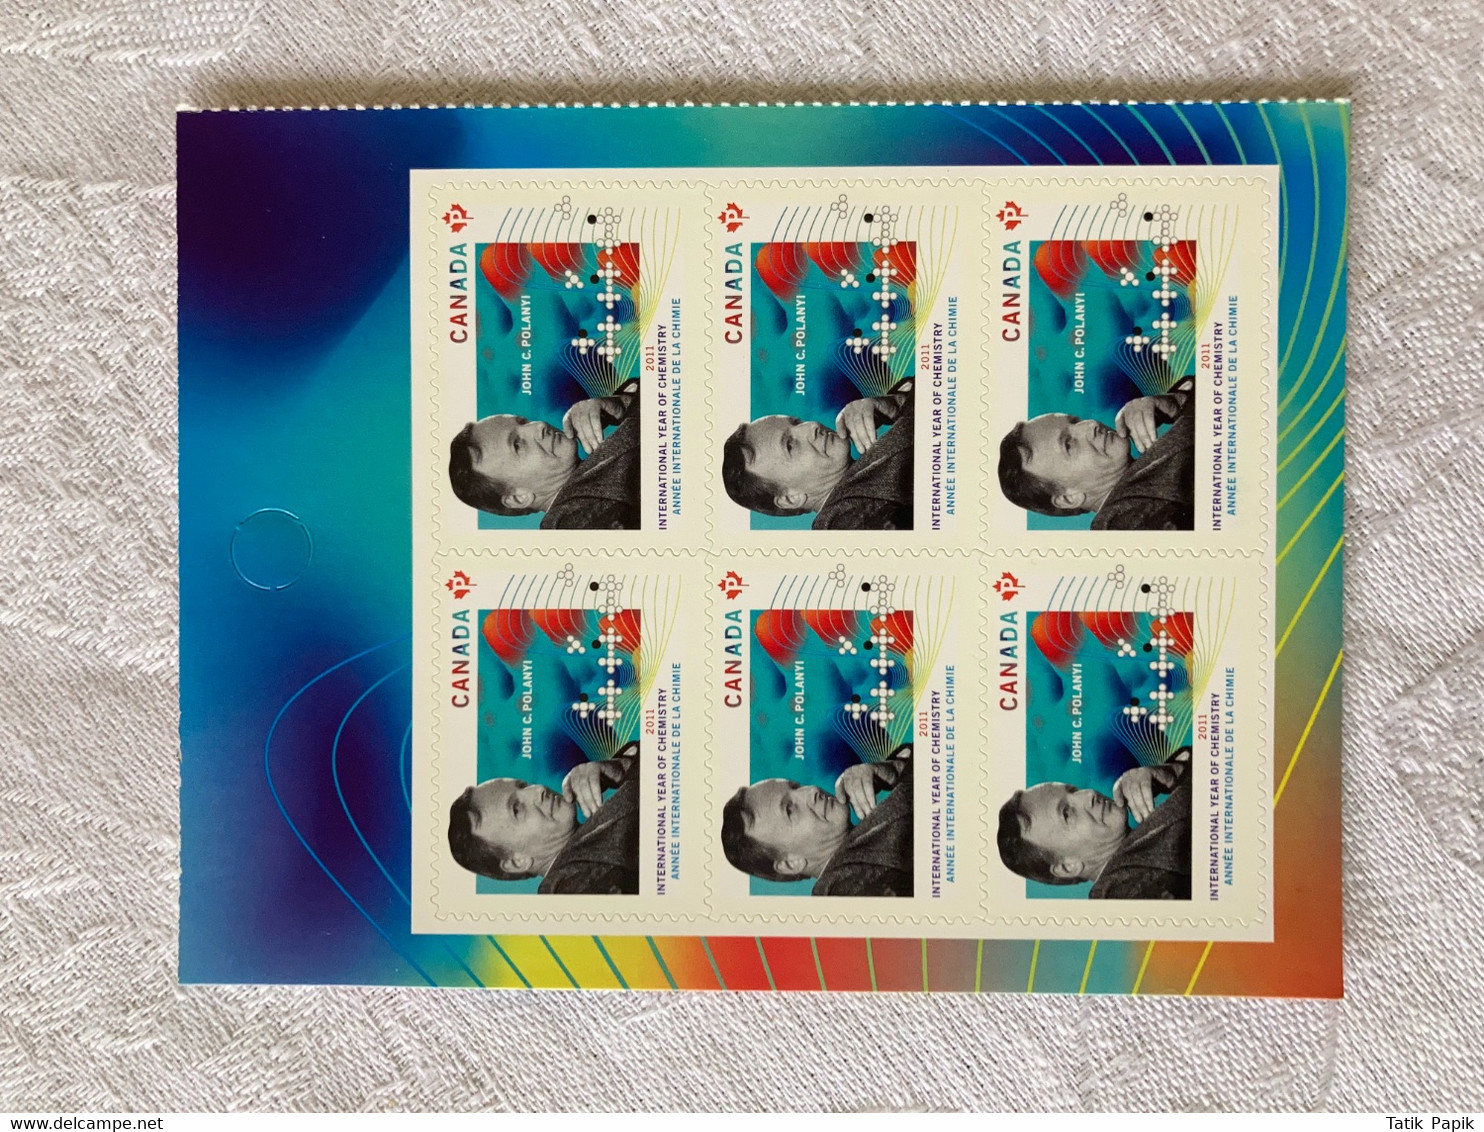 2011 Canada Année Internationale De La Chimie Timbre Permanent Stamps - Paginas De Cuadernillos